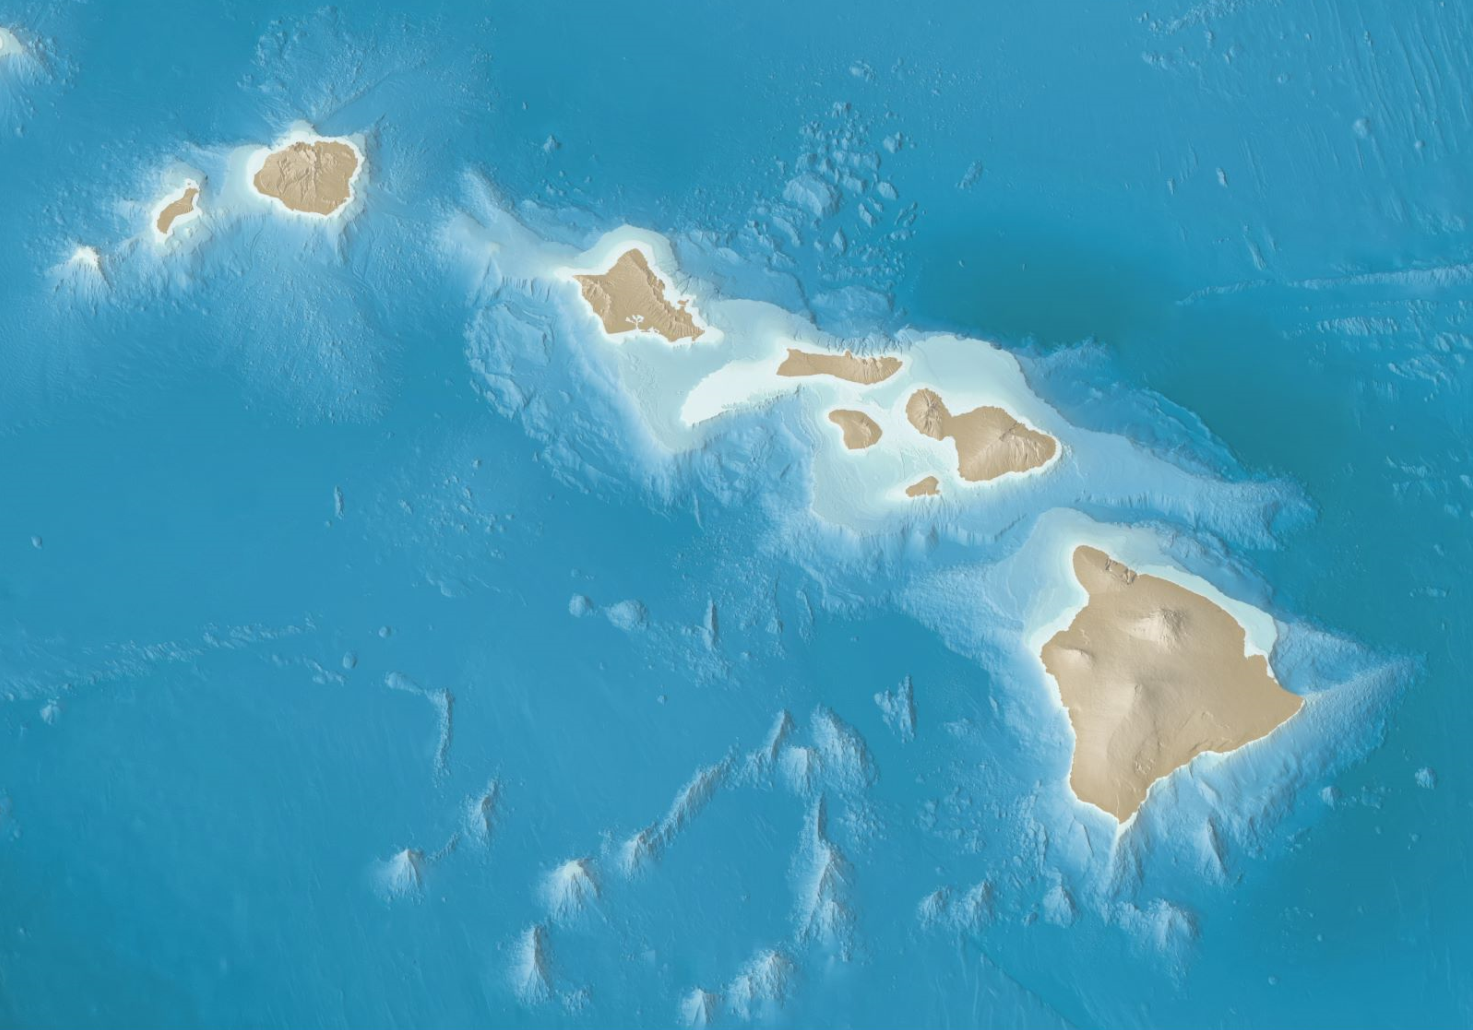 夏威夷海底地图